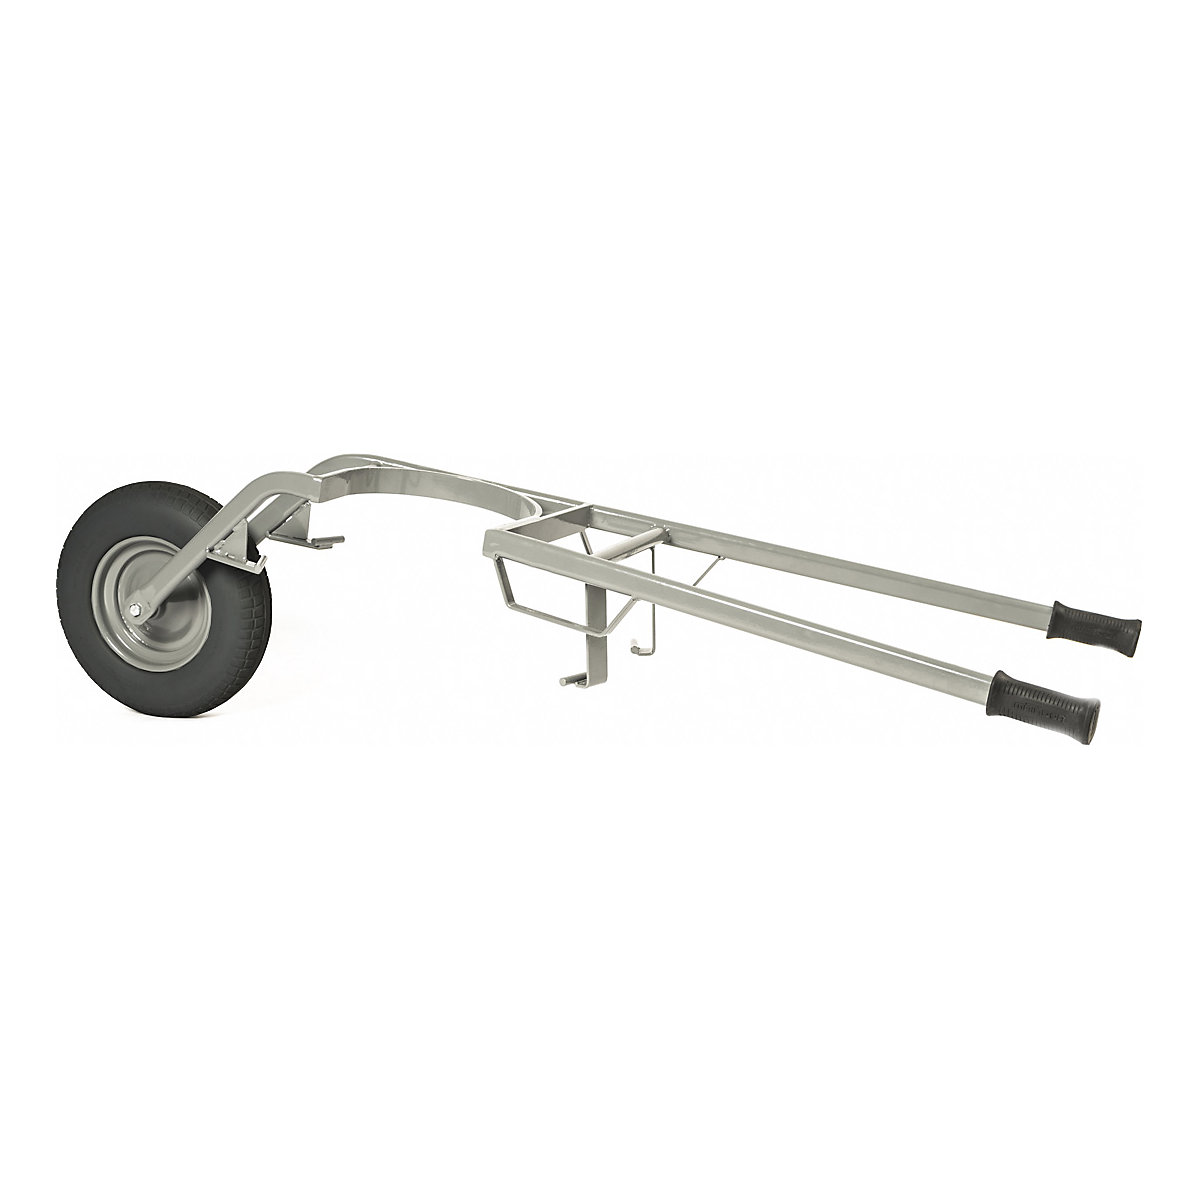 Mortar tub wheel barrow - MATADOR